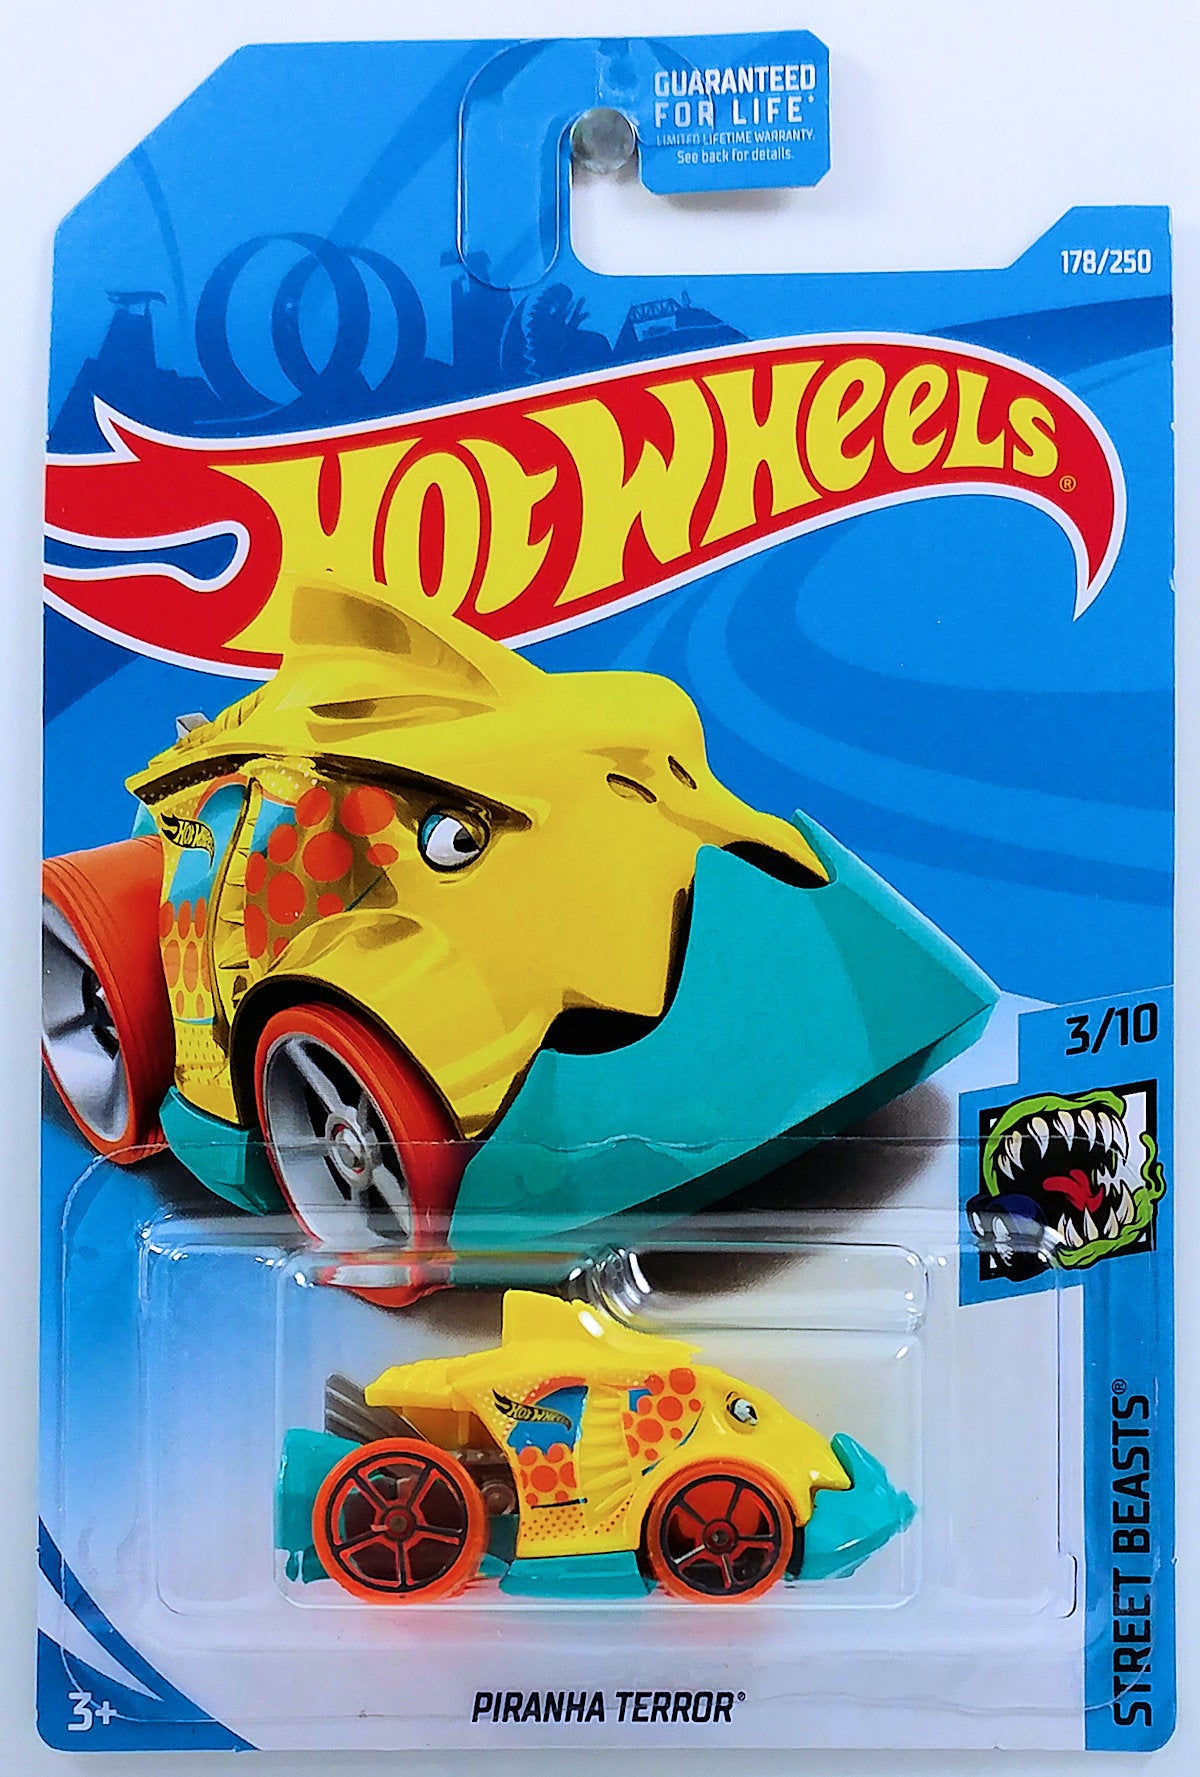 Hot Wheels 2019 - Collector # 178/250 - Piranha Terror